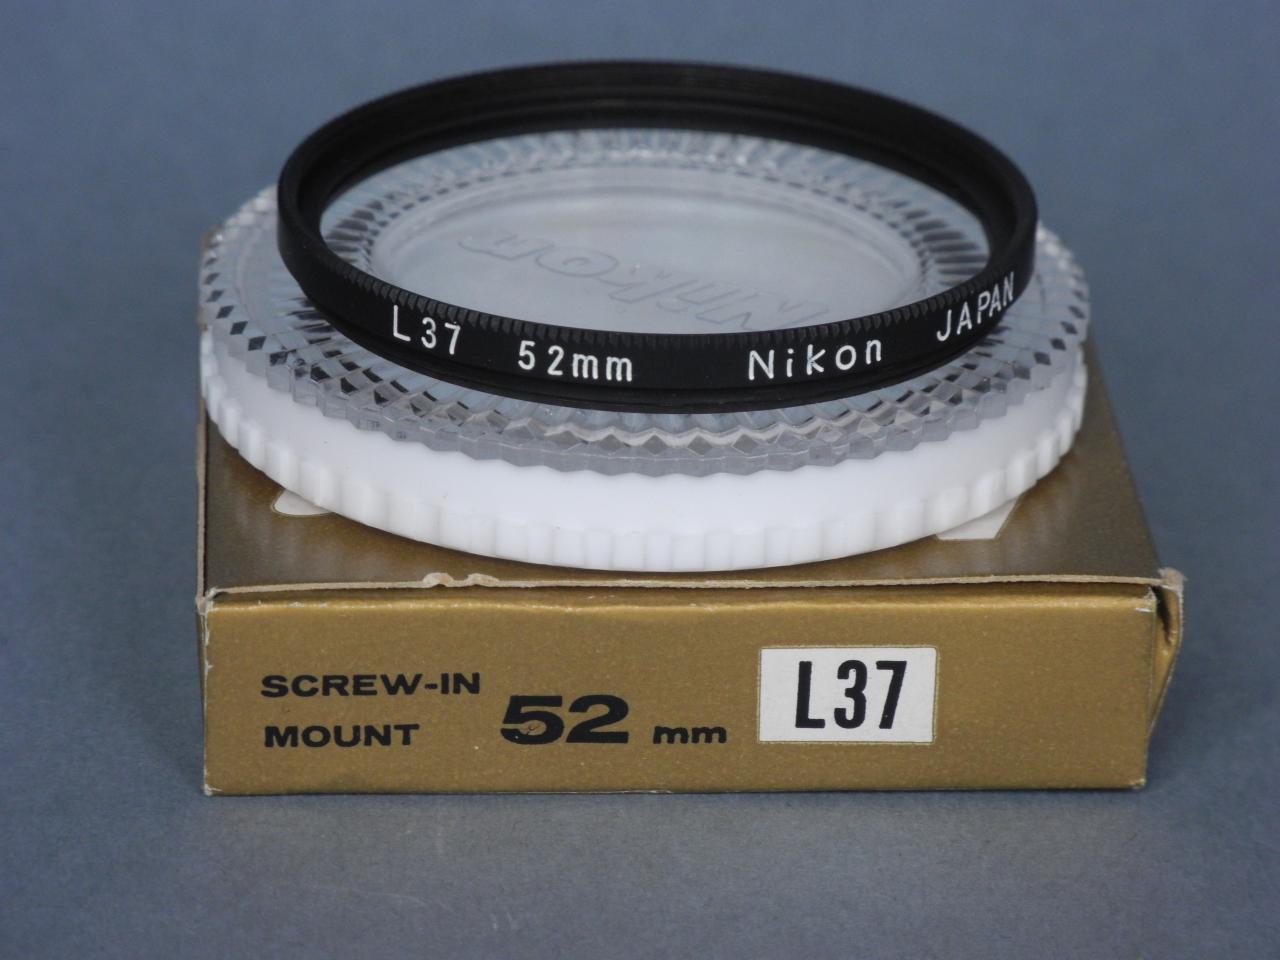 *Nikon SCREW-IN L37 52mm*